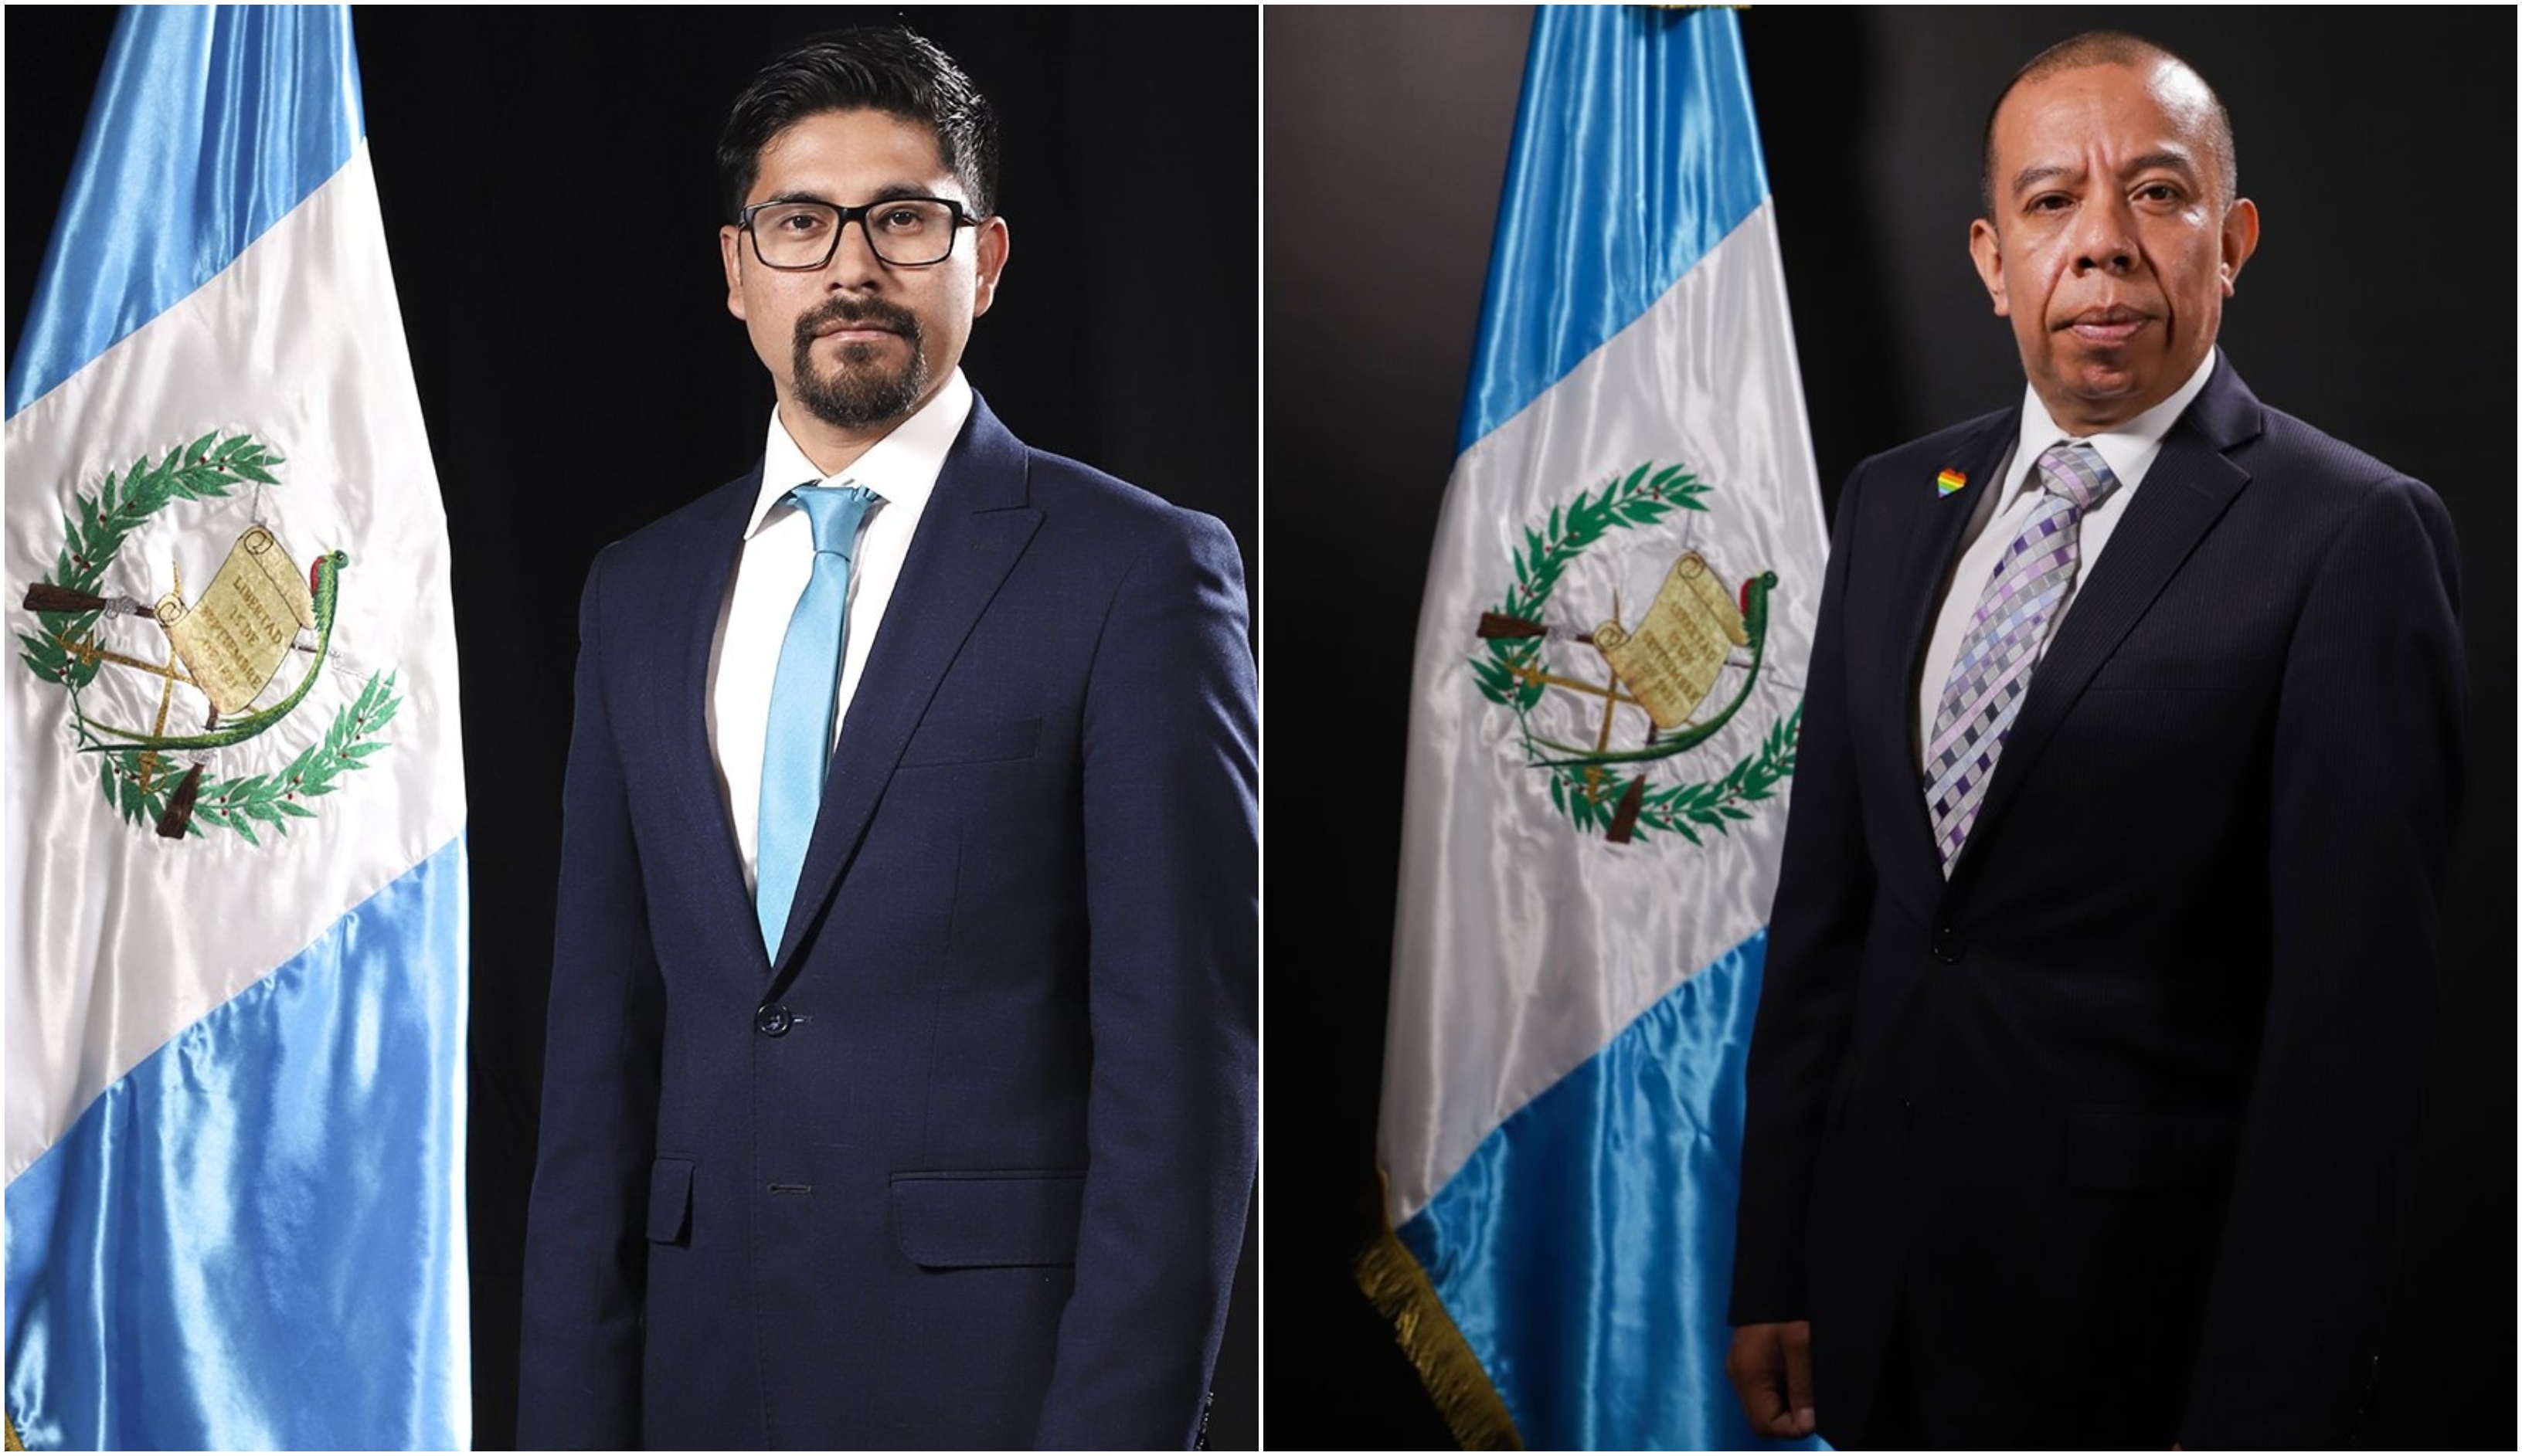 El Ministerio Público presentó una solicitud de retiro de inmunidad contra los diputados Román Castellanos y Aldo Dávila. (Foto Prensa Libre: Congreso Guatemala).